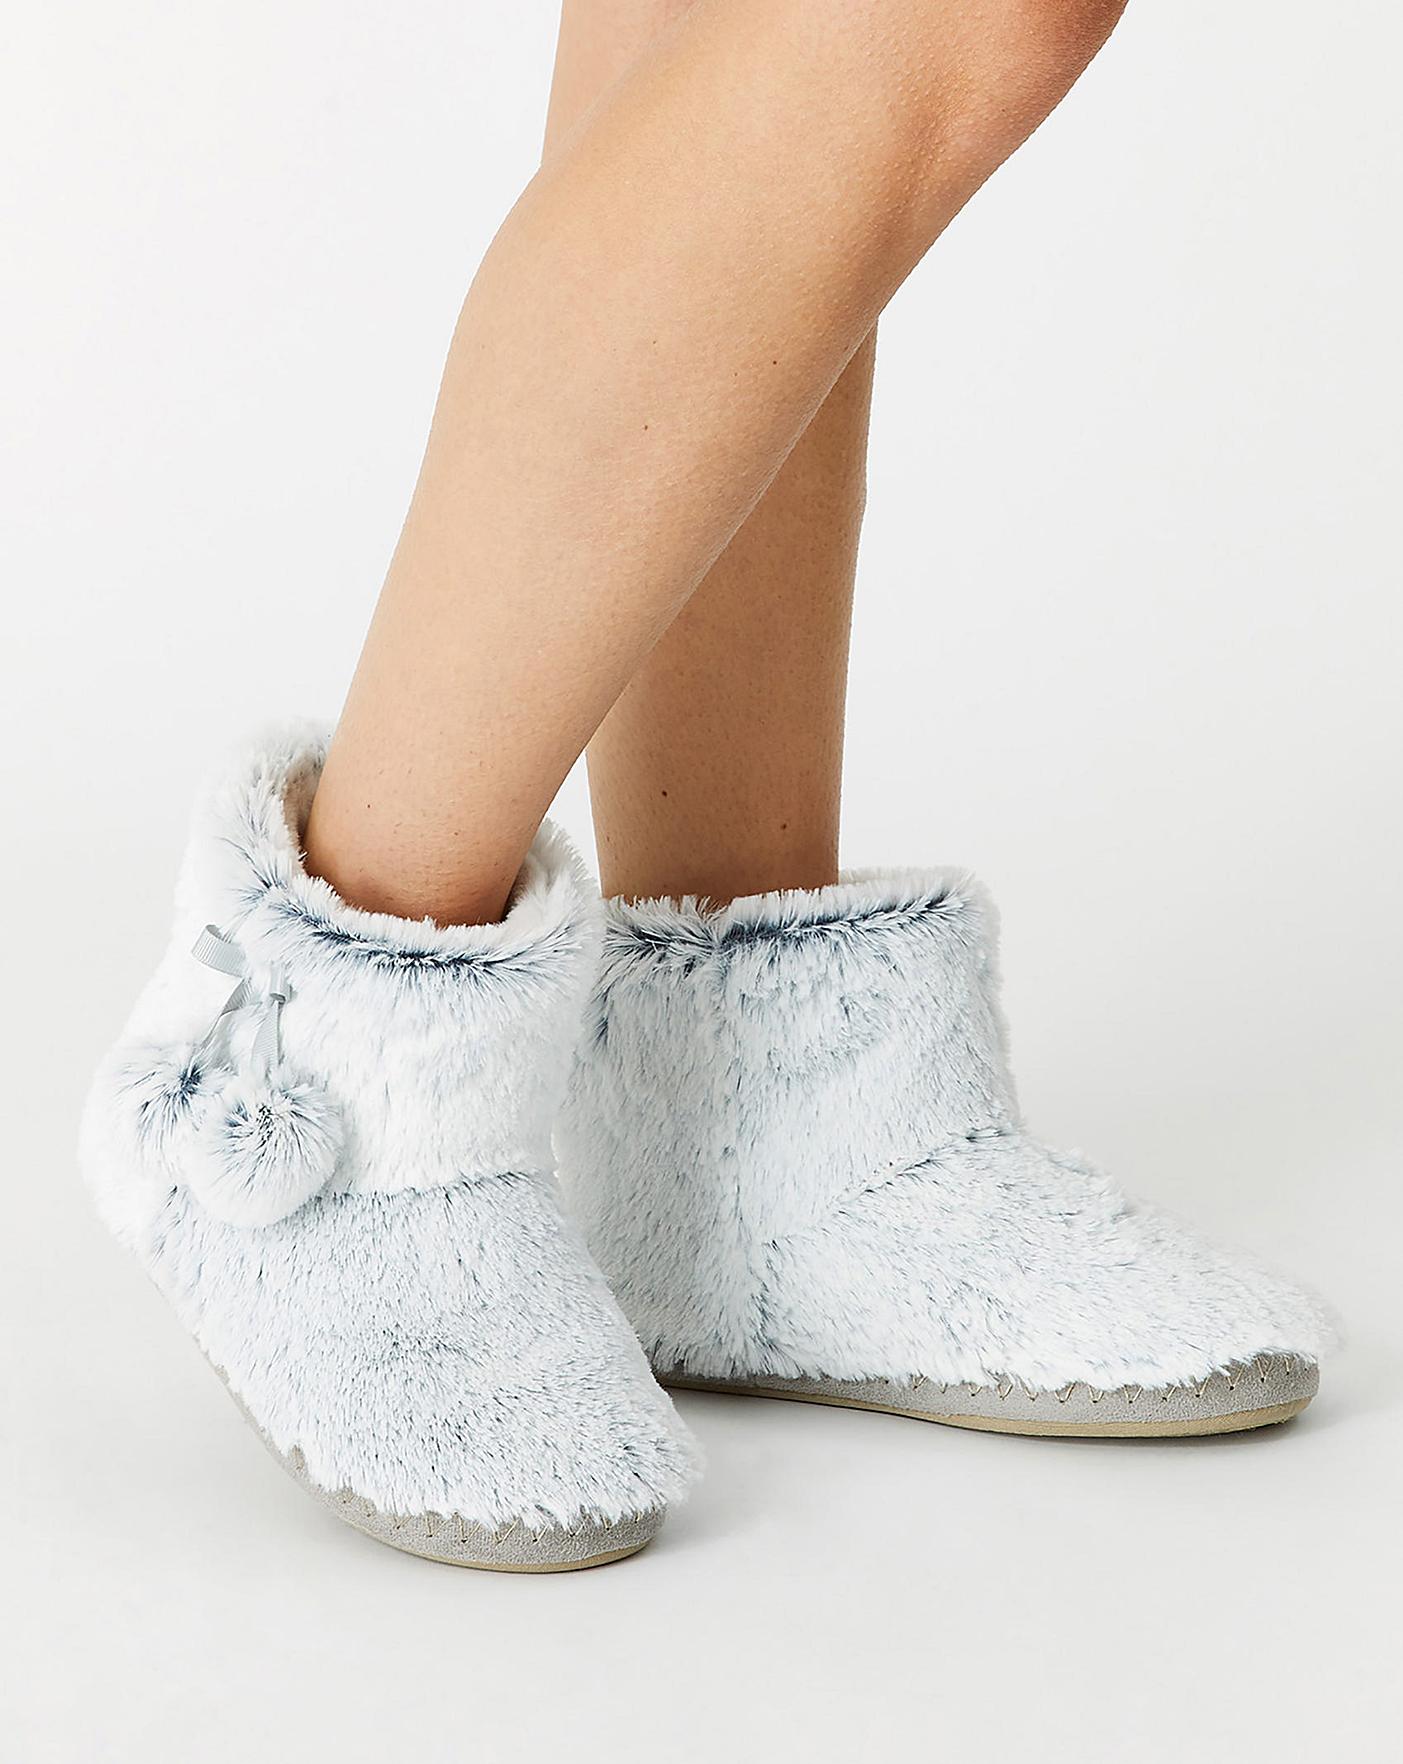 Crochet Kit - Hibernation Crochet Slipper Boots – Lion Brand Yarn